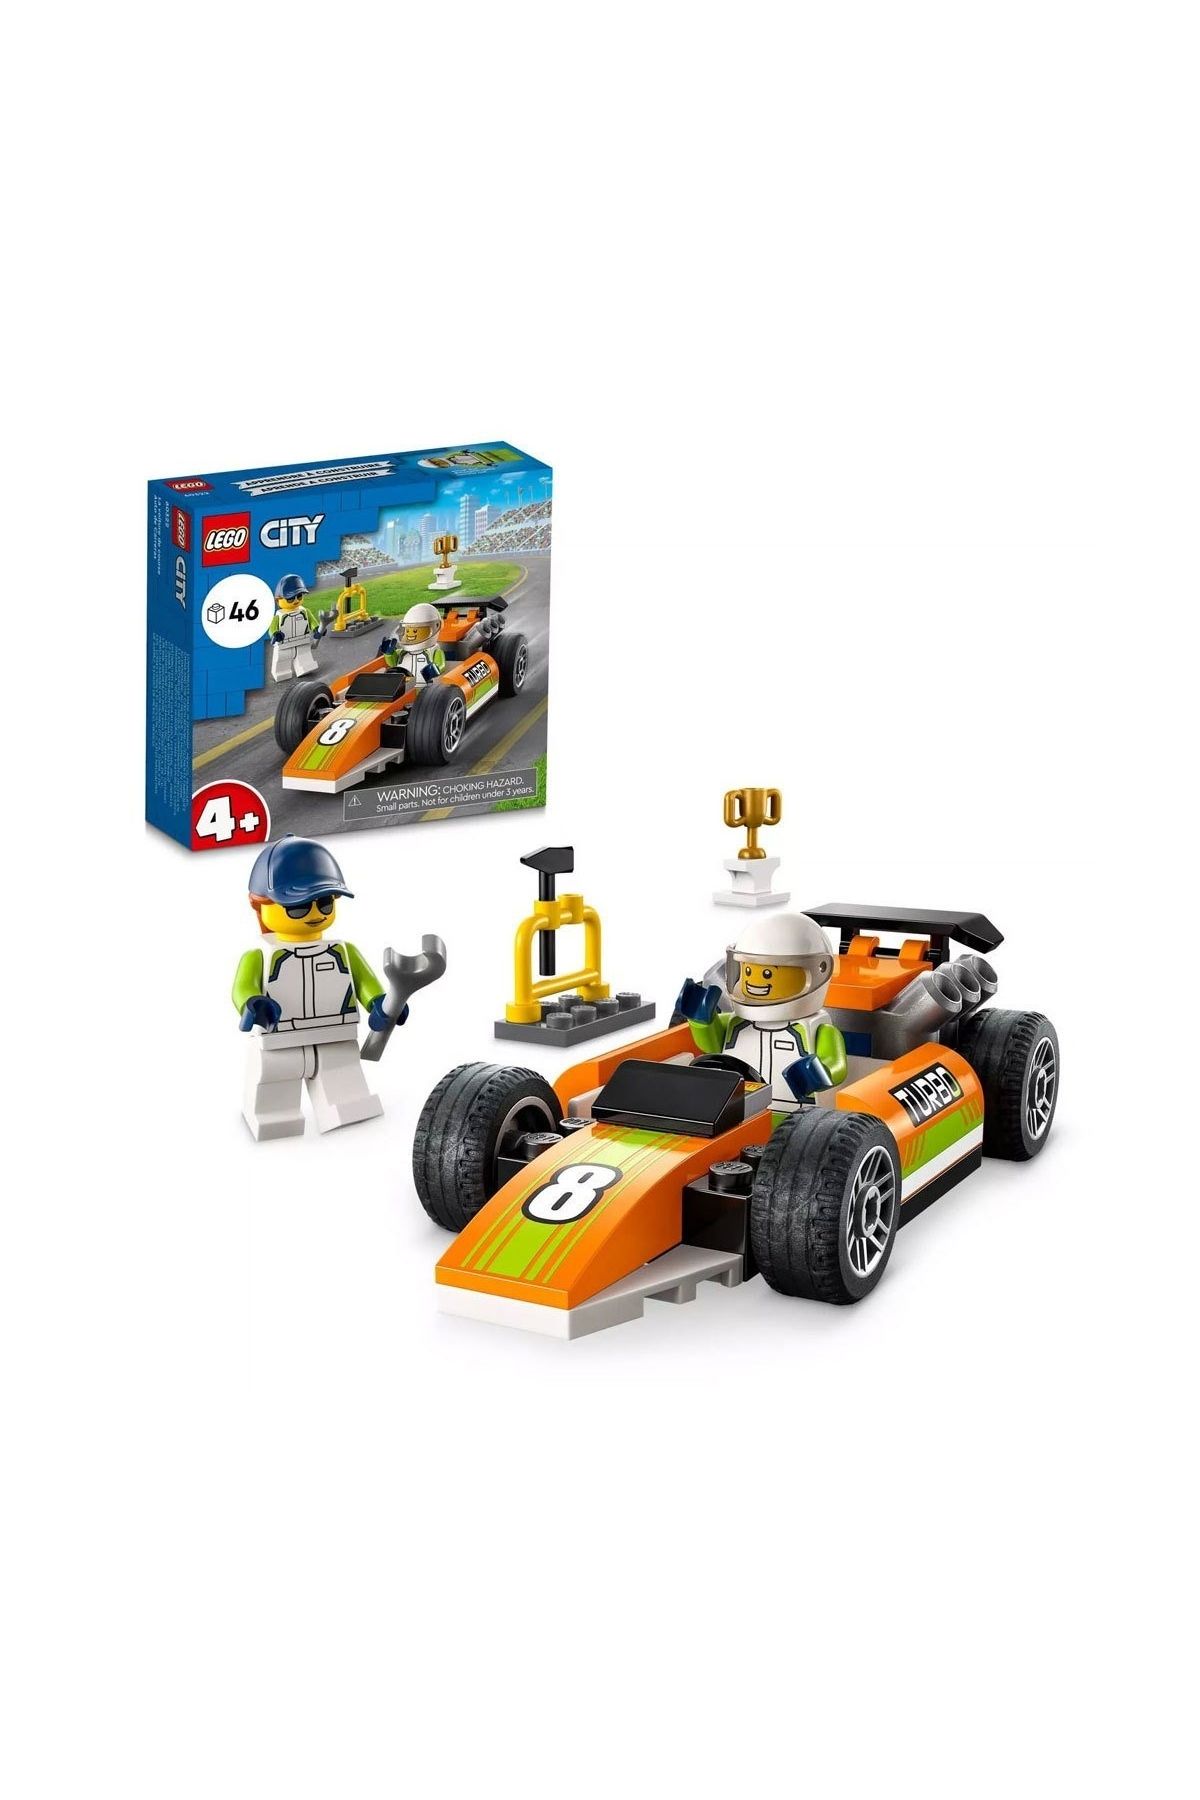 LEGO City Yarış Arabası 60322-4 Yaş Ve Üzeri Çocuklar Için Tasarlanmış Oyuncak Yapım Seti (46 PARÇA)